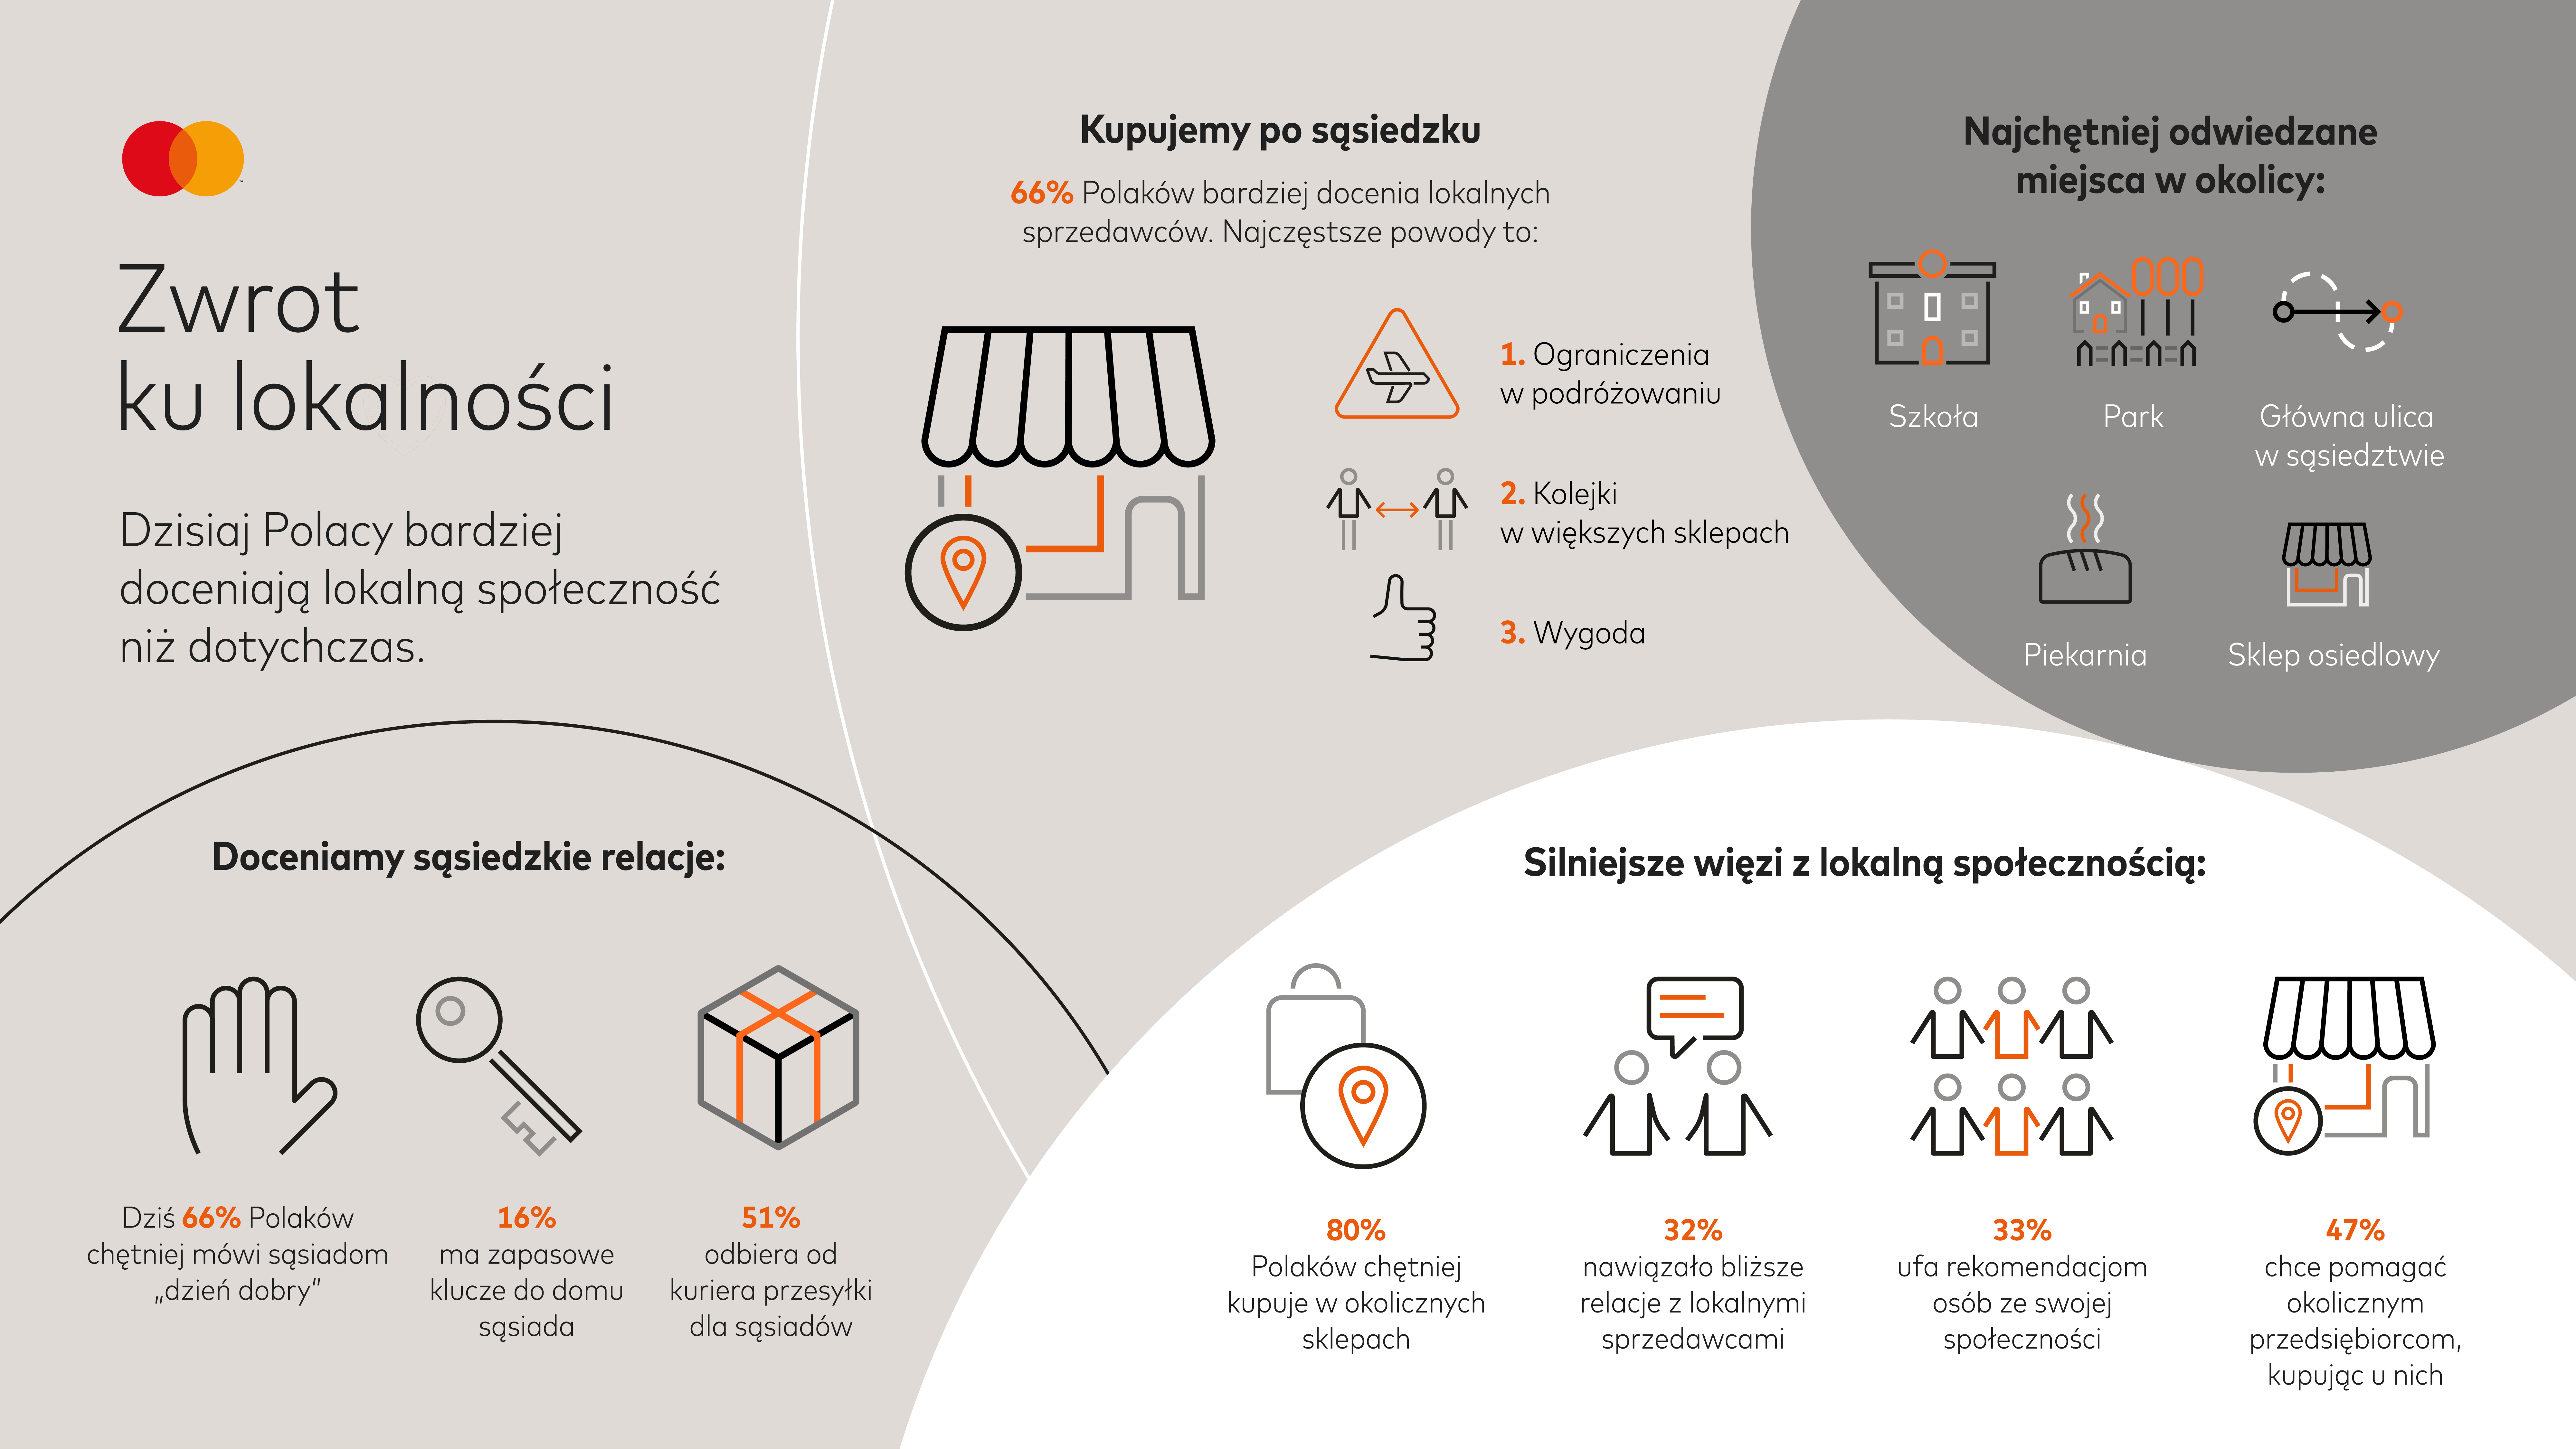 Badanie Mastercard: dzisiaj Polacy bardziej doceniają okolicznych sprzedawców i lokalną społeczność